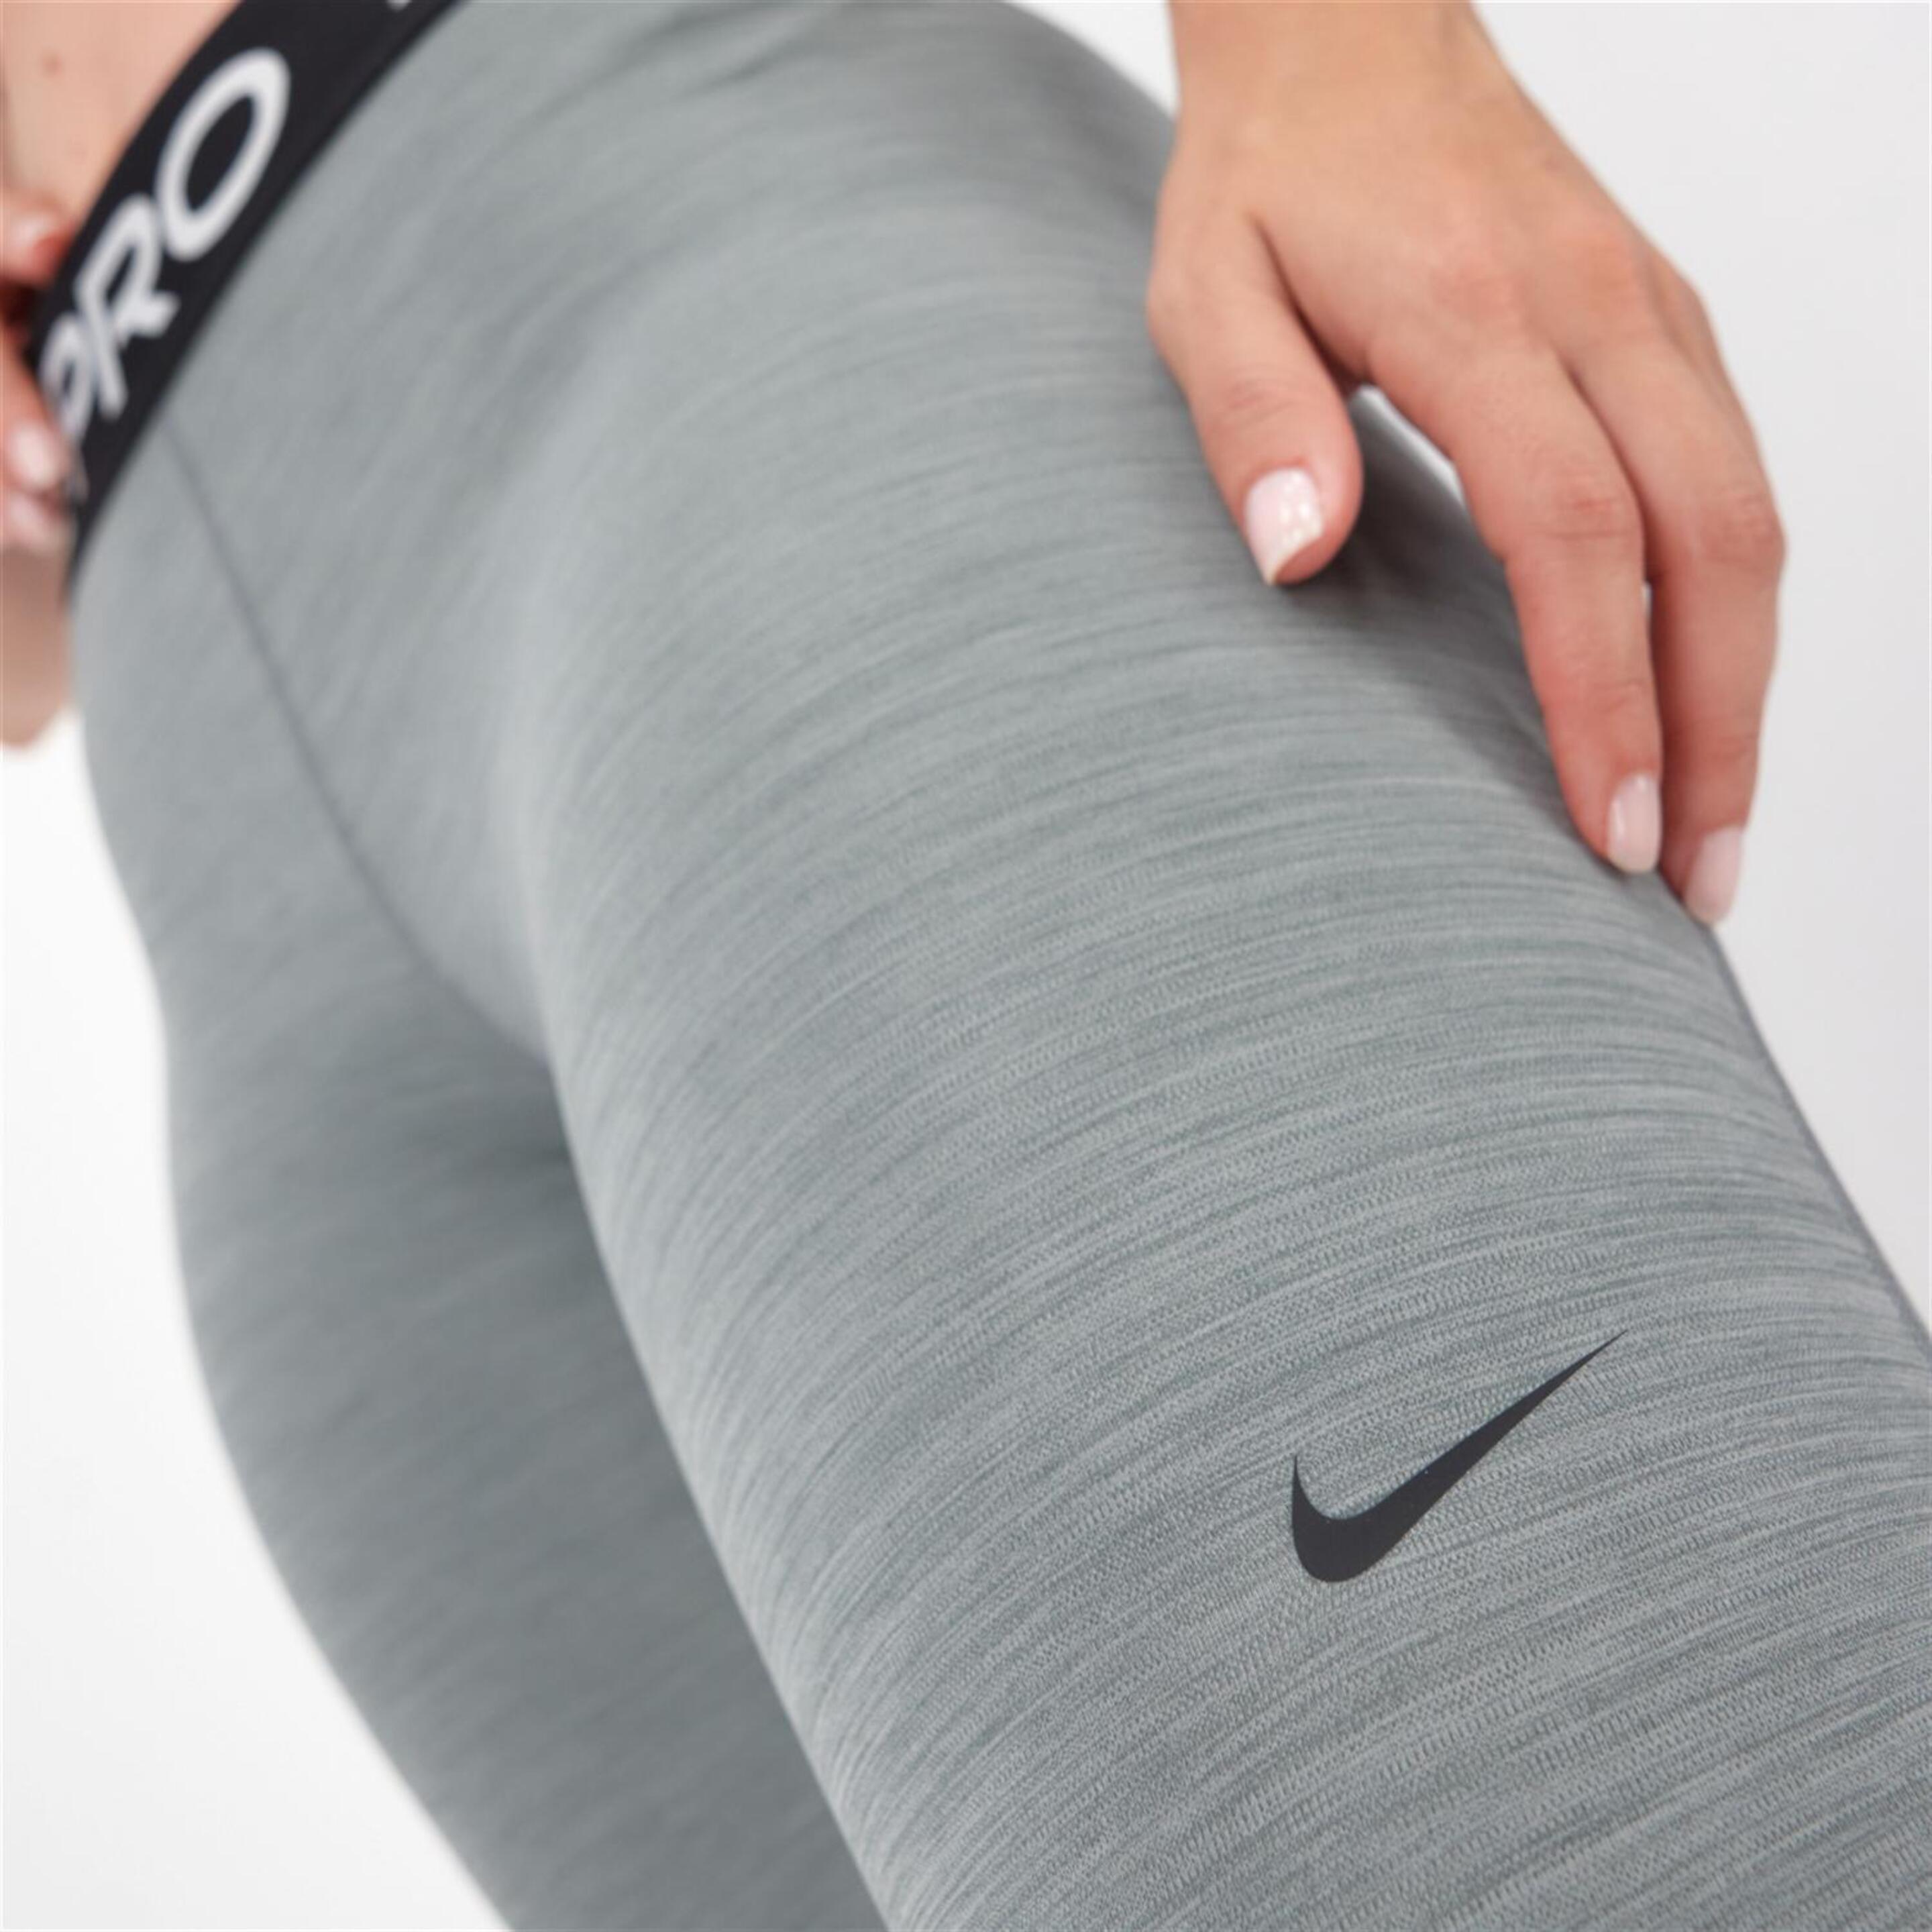 Nike Pro - Gris - Mallas Transparencias Mujer